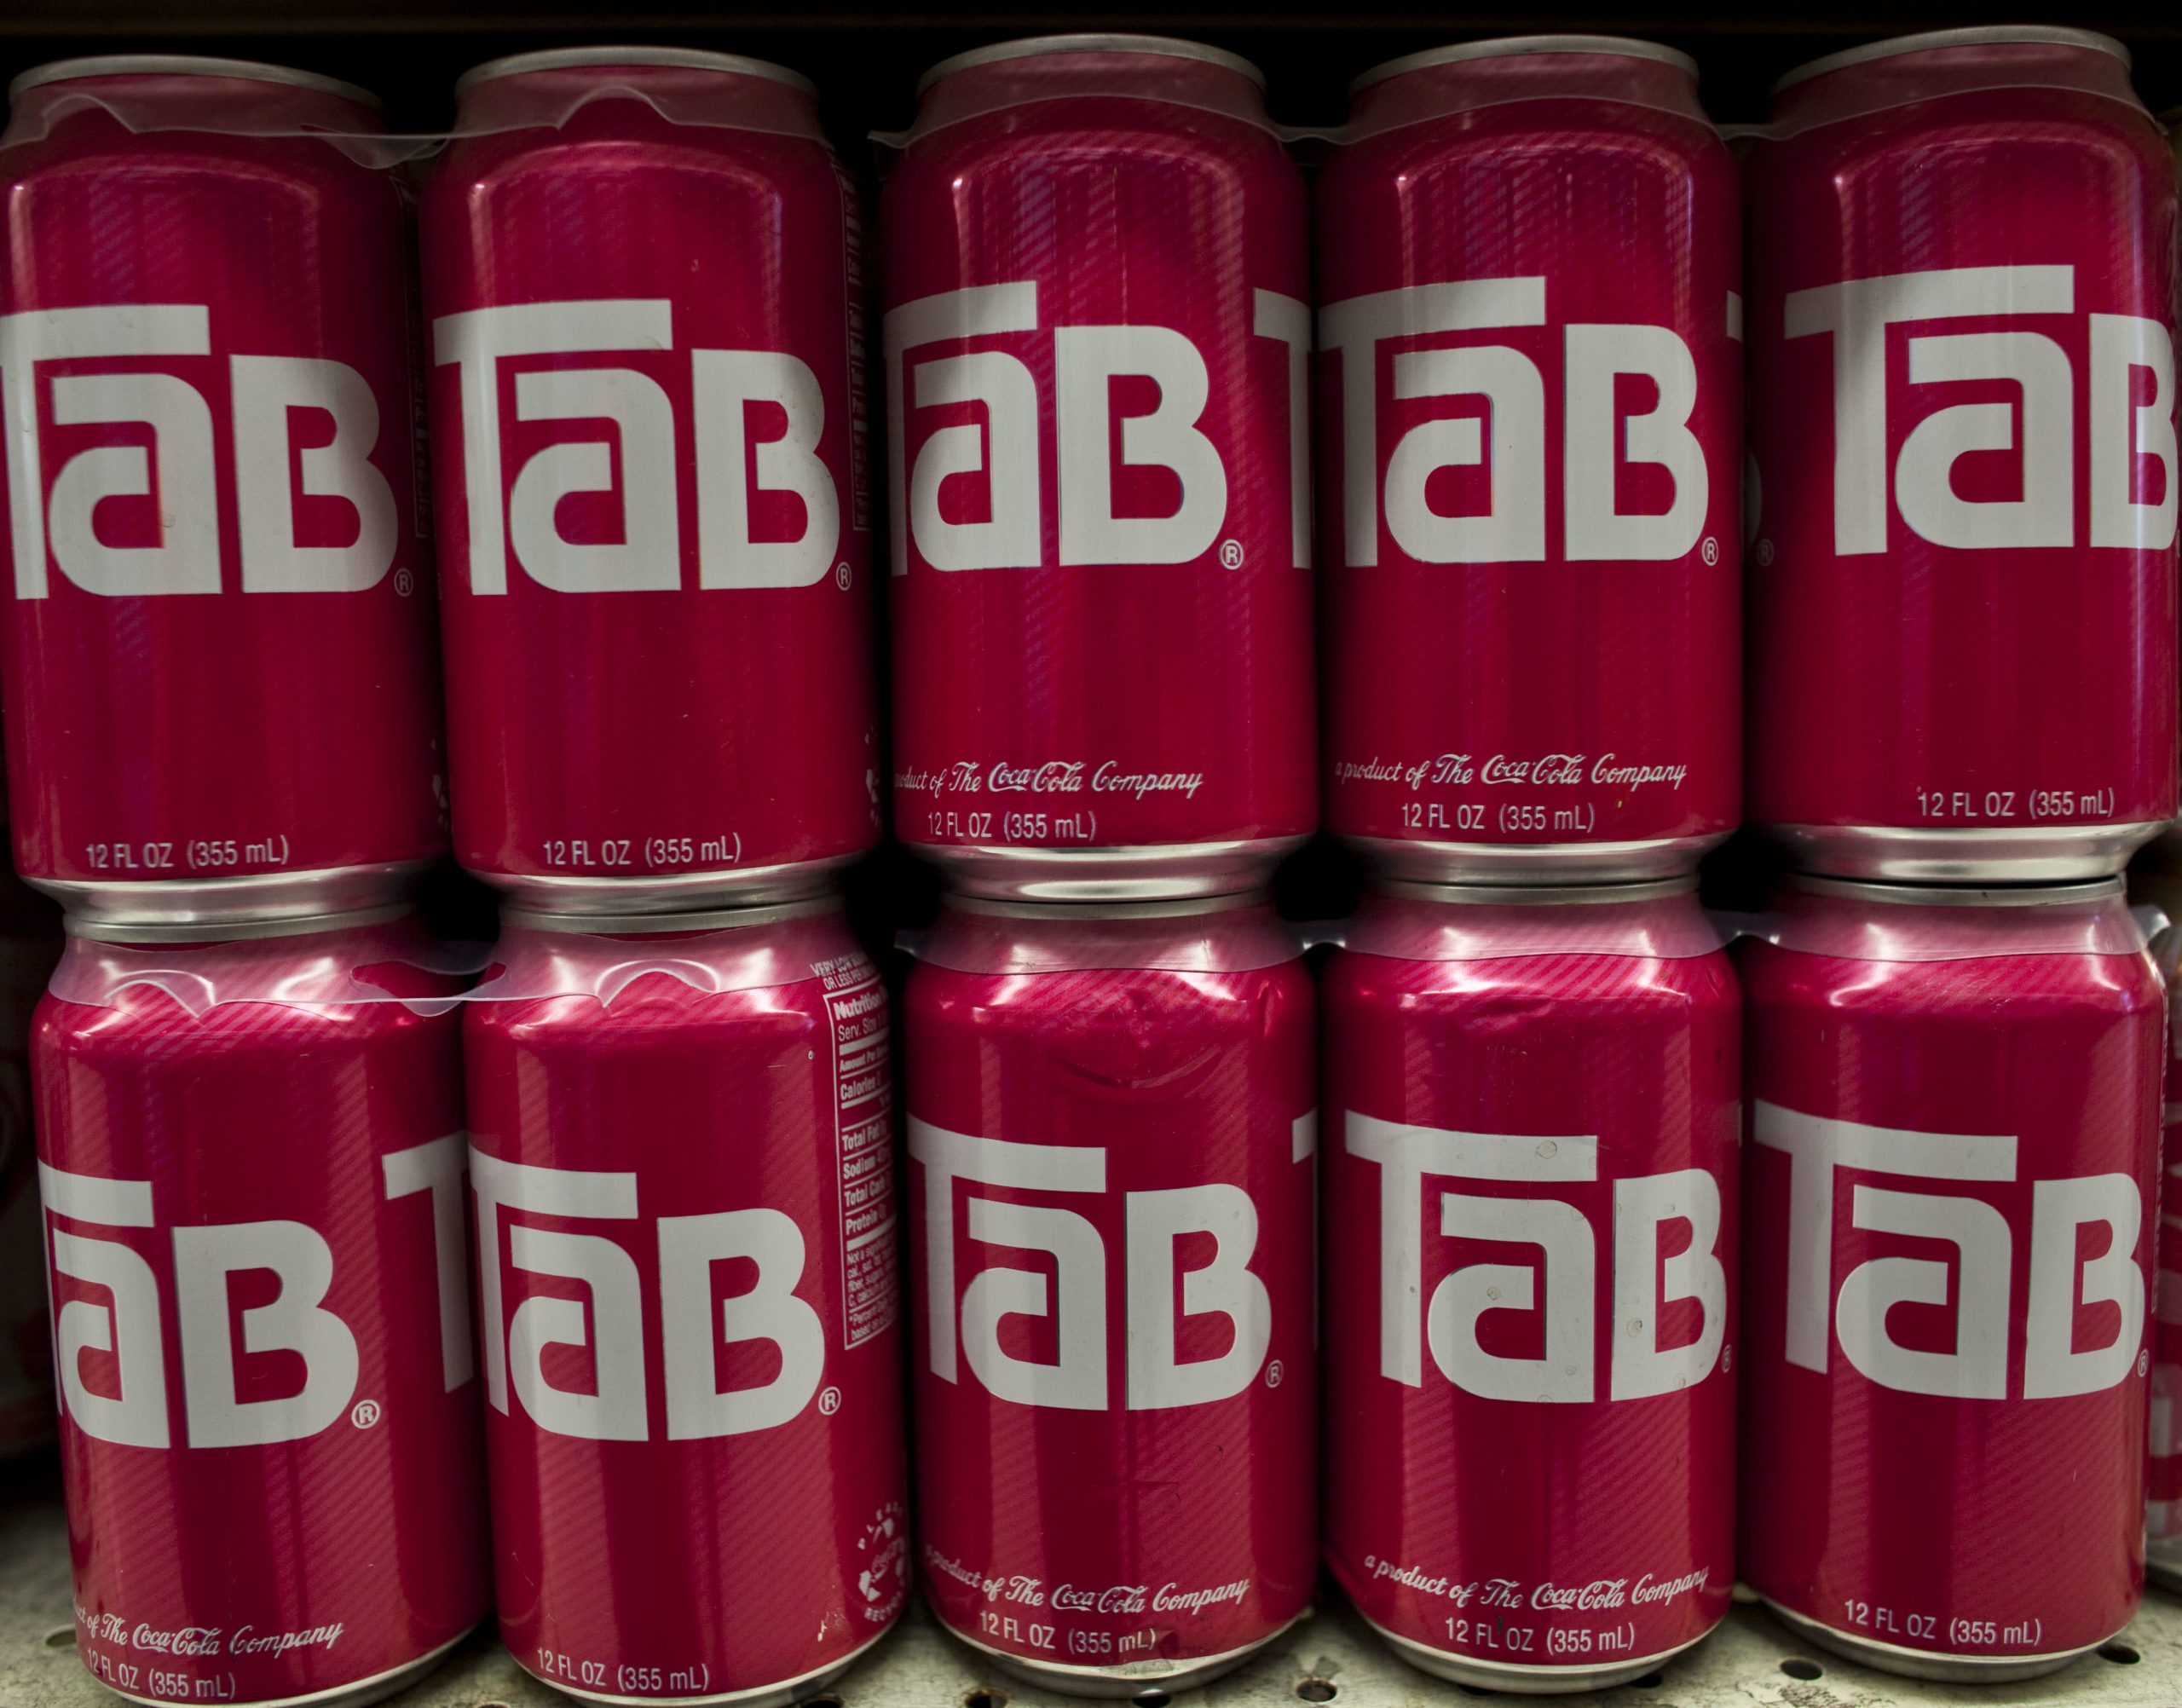 Coca-Cola to retire Tab because it trims its portfolio